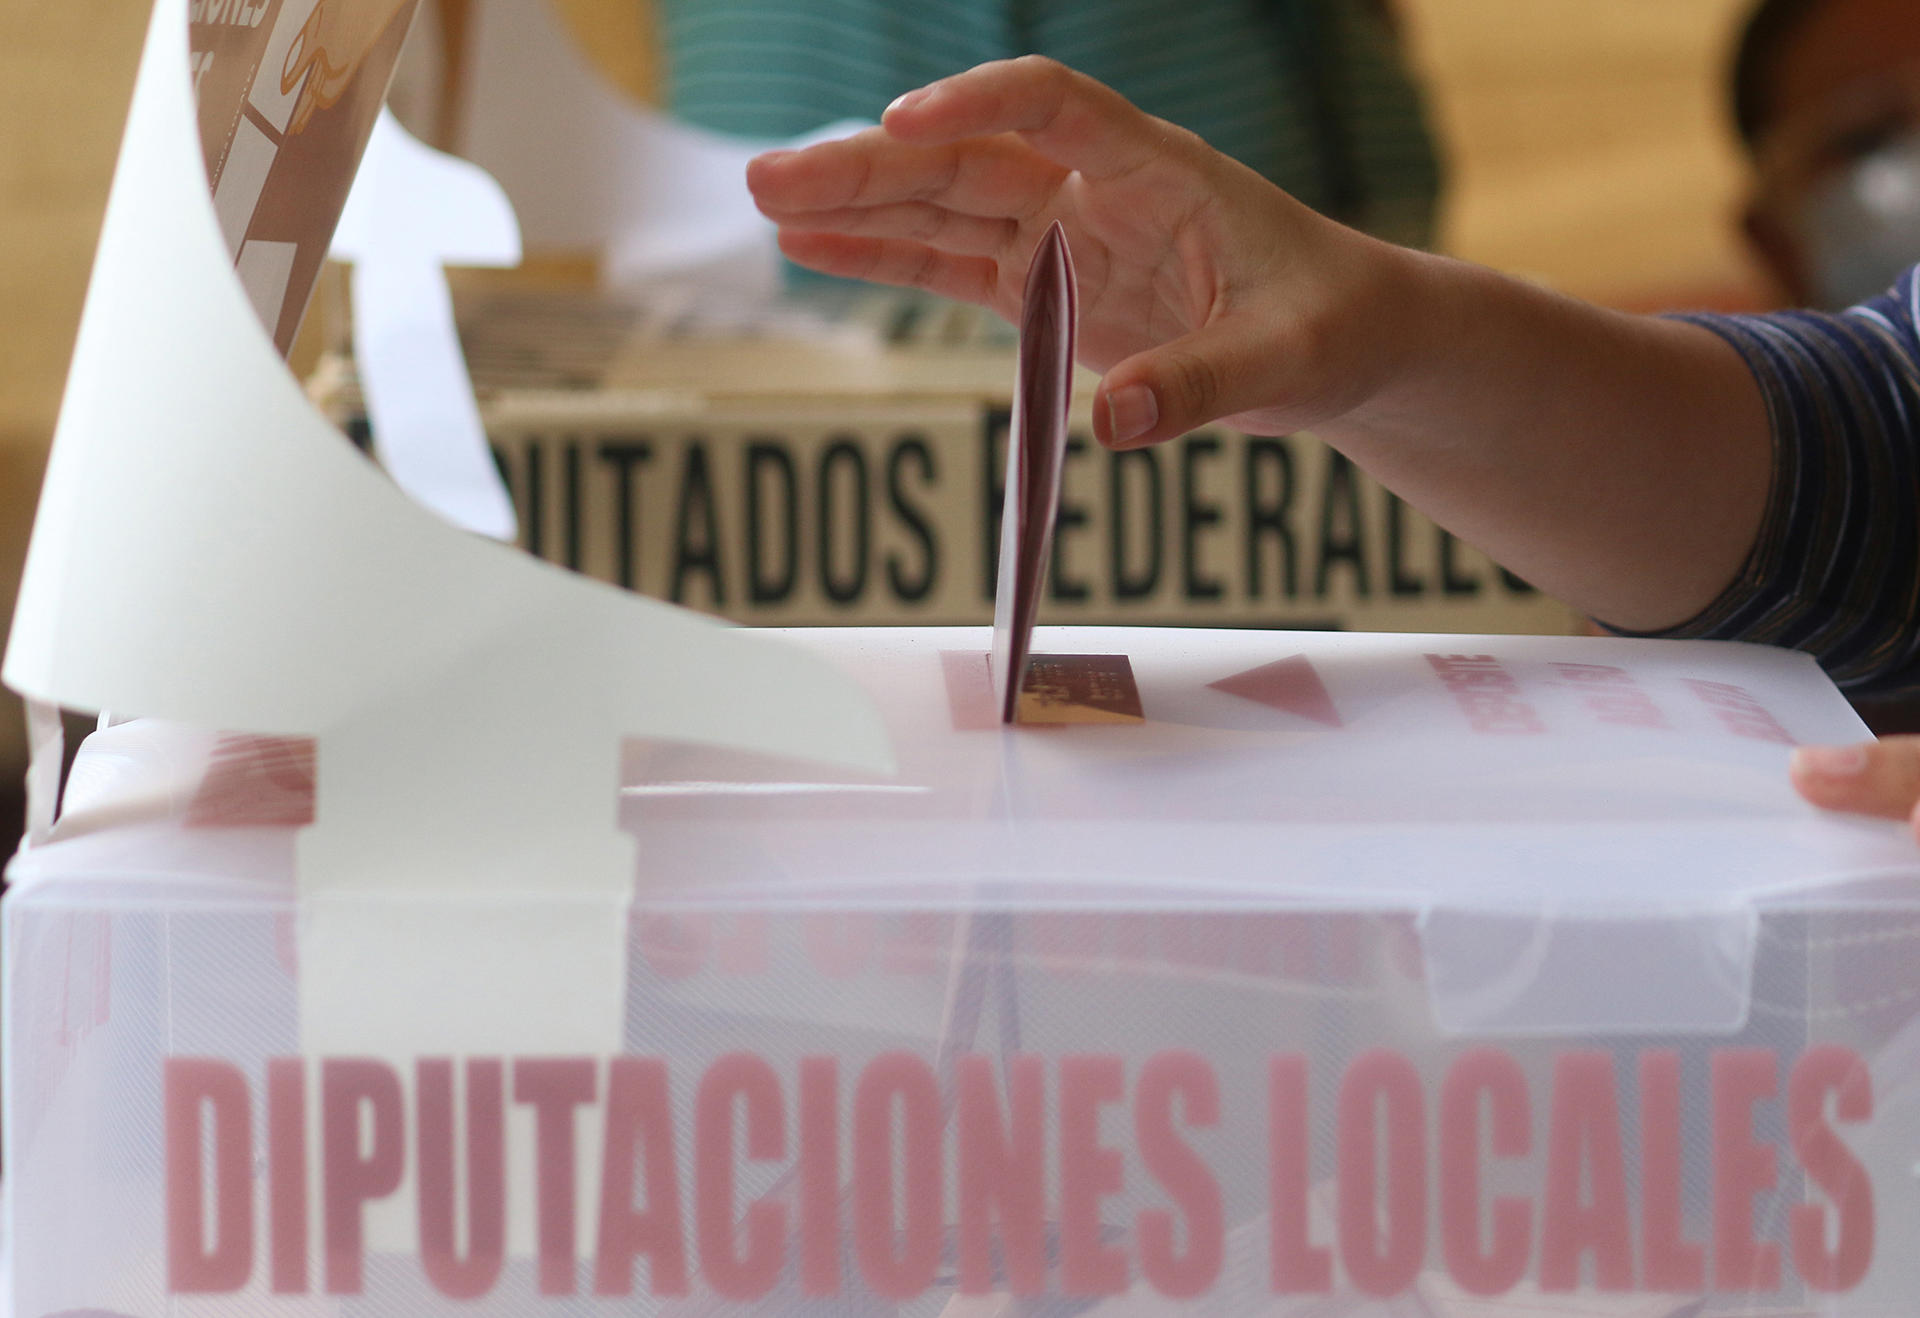 Imagen de archivo que muestra una mujer emitiendo su voto en una casilla de la ciudad de Pachuca estado de Hidalgo (México). EFE/ Daniel Martínez Pelcastre